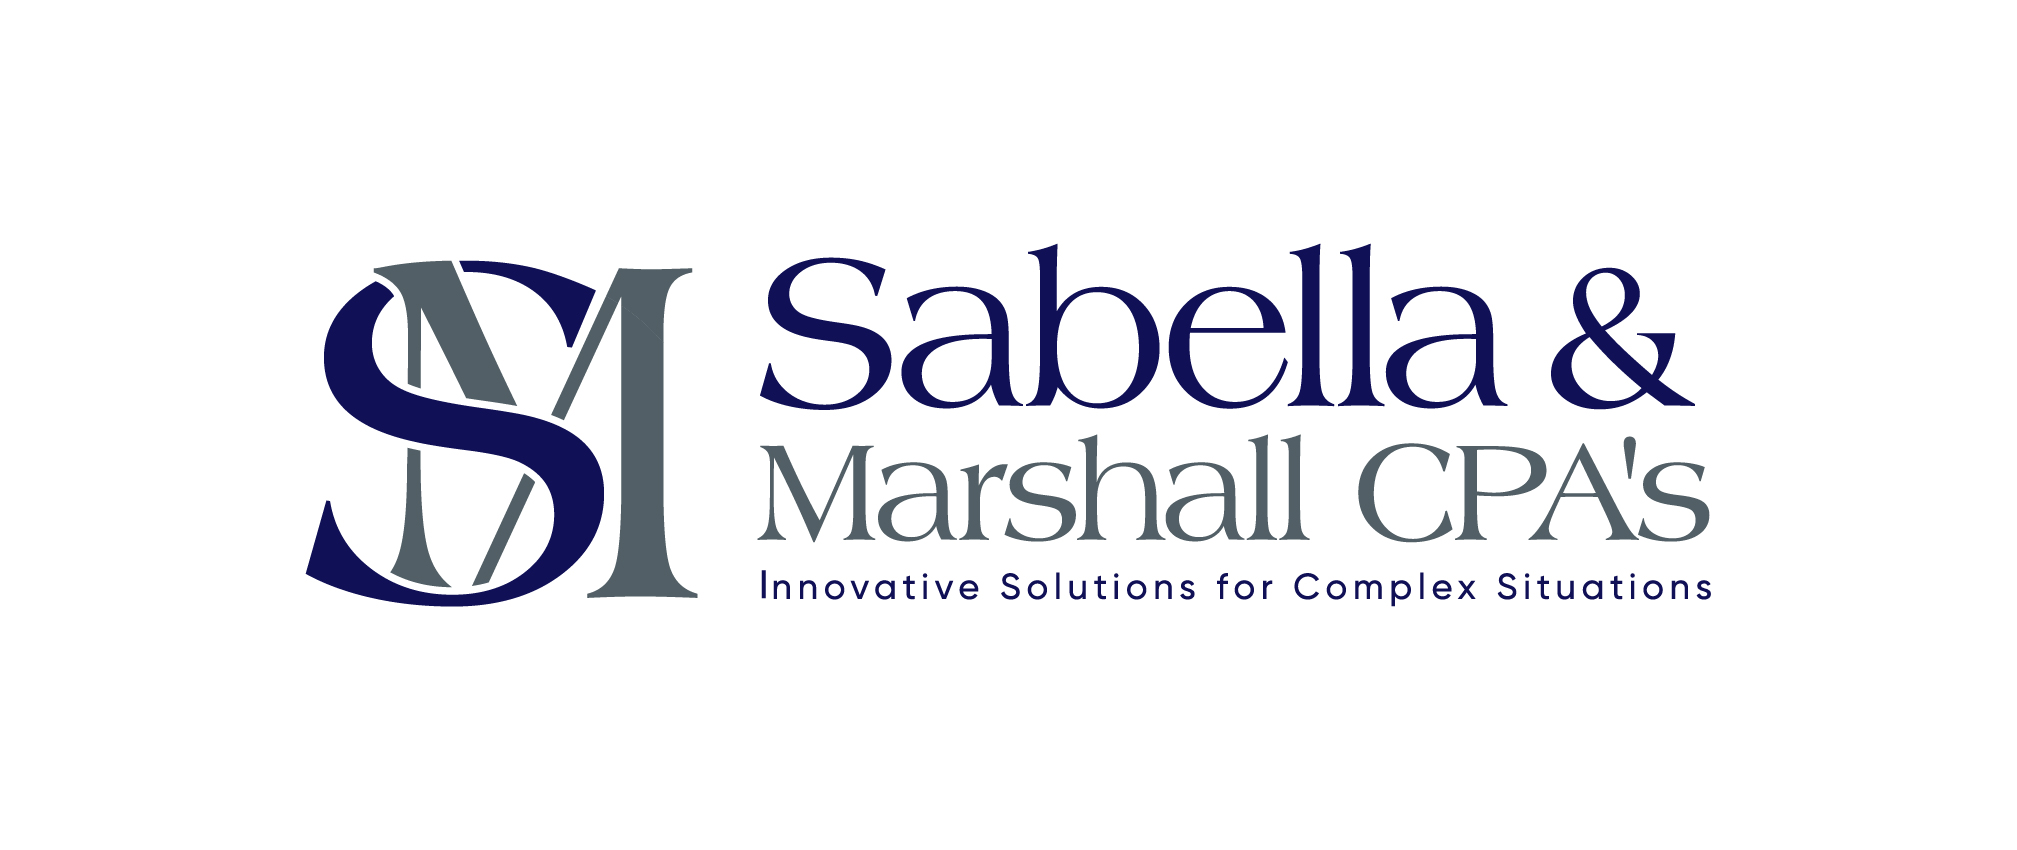 Sabella & Marshall CPA's